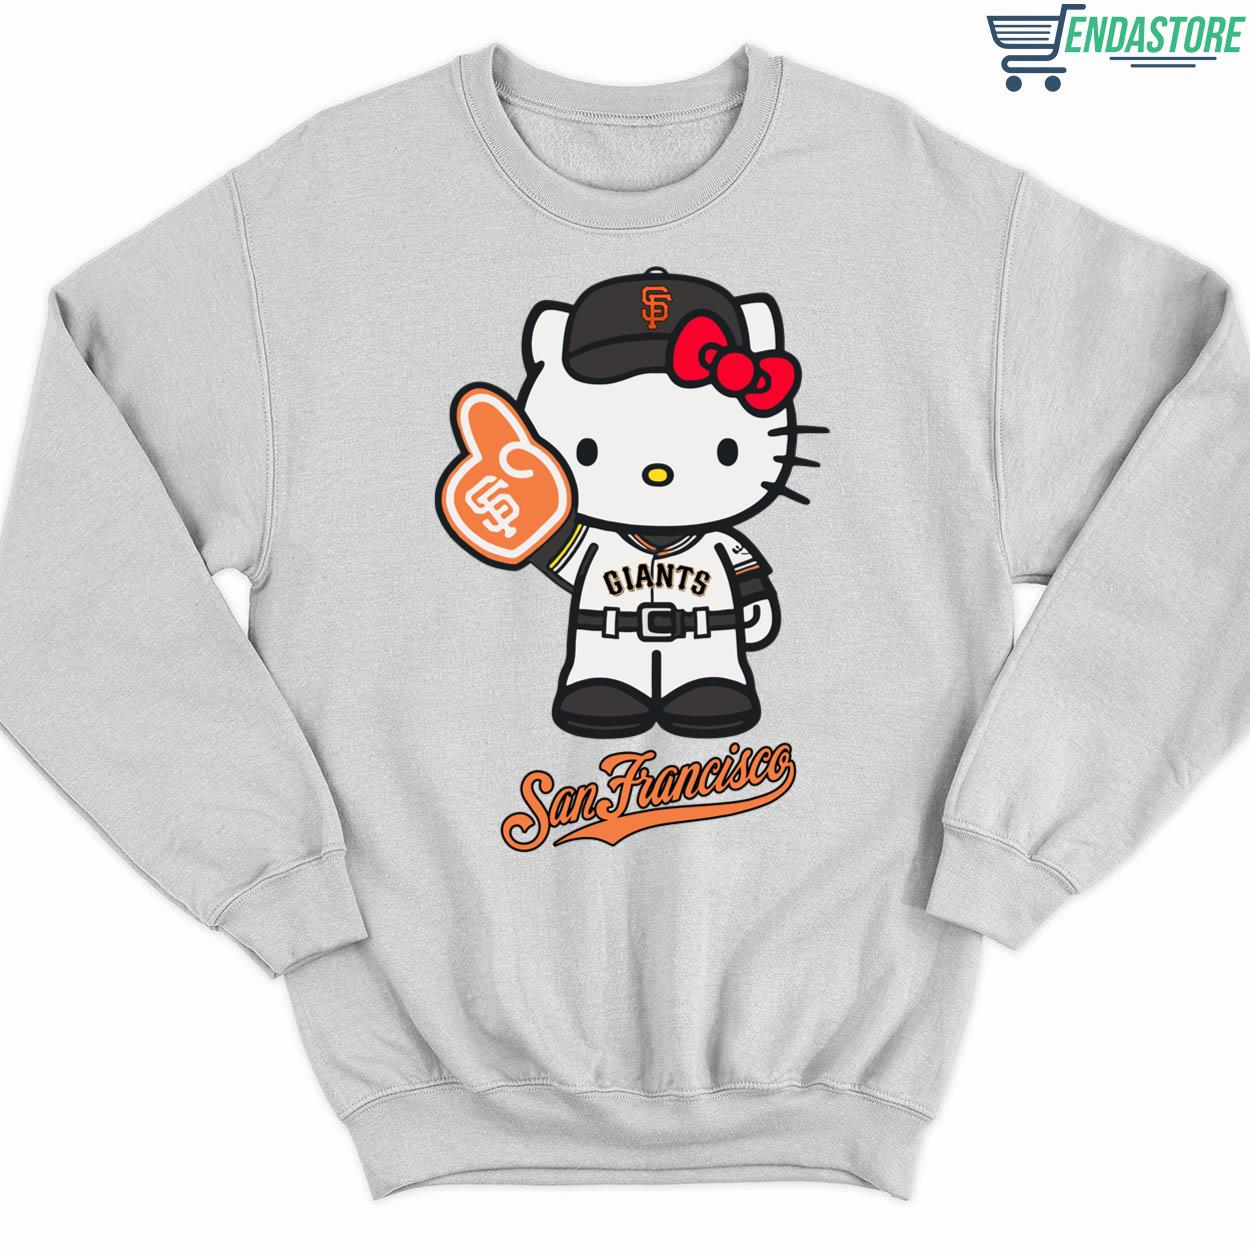 Endastore 2023 San Francisco Giants Hello Kitty Giants Sweatshirt